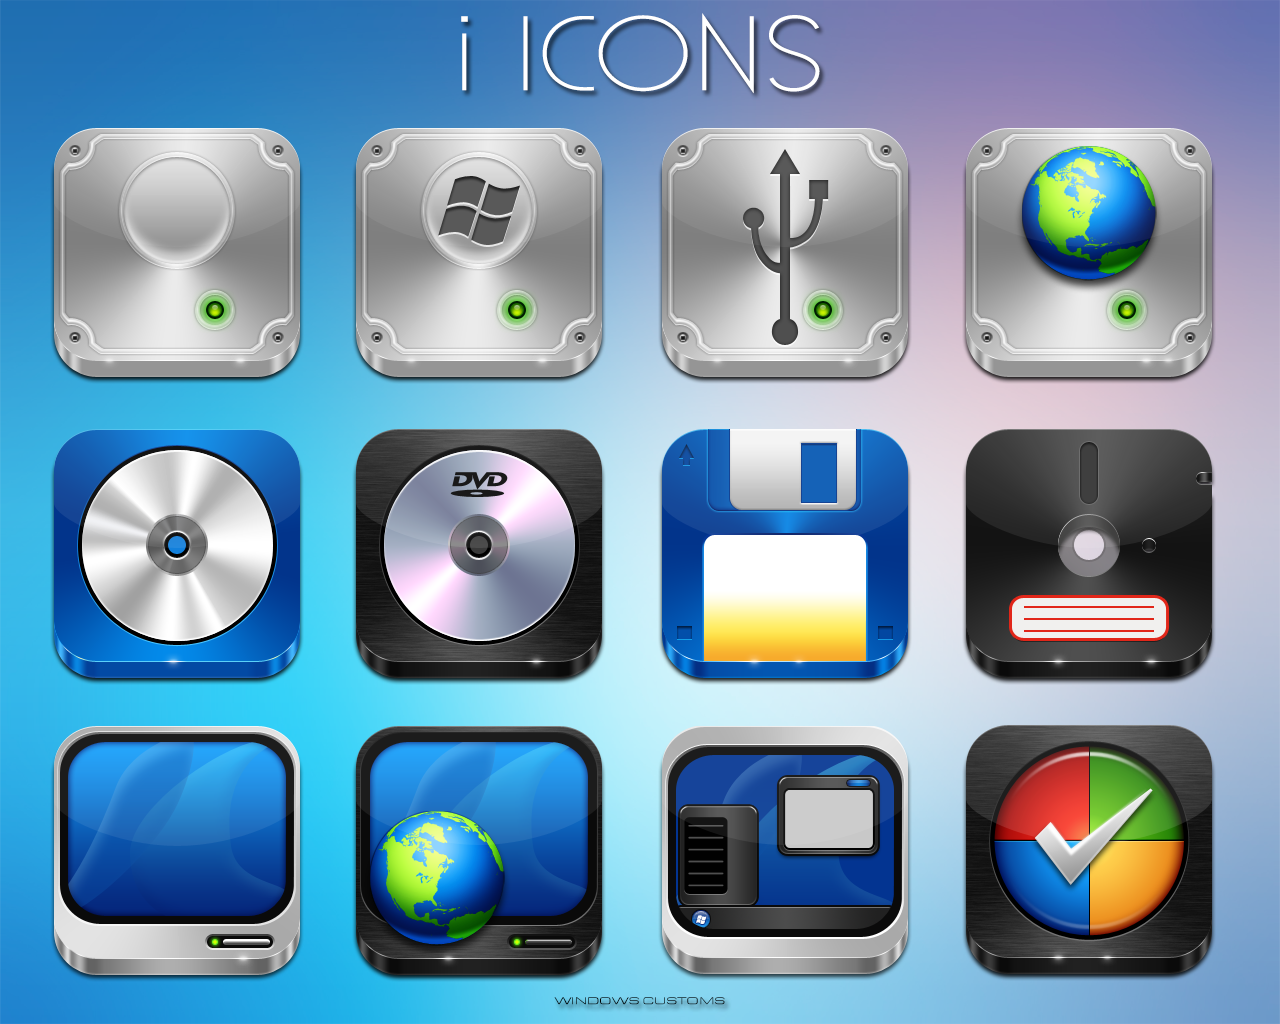 Icon pack 4pda. Иконки IOS 15. Иконка системного приложения. IOS + Windows иконки. Паки иконок Windows 10.